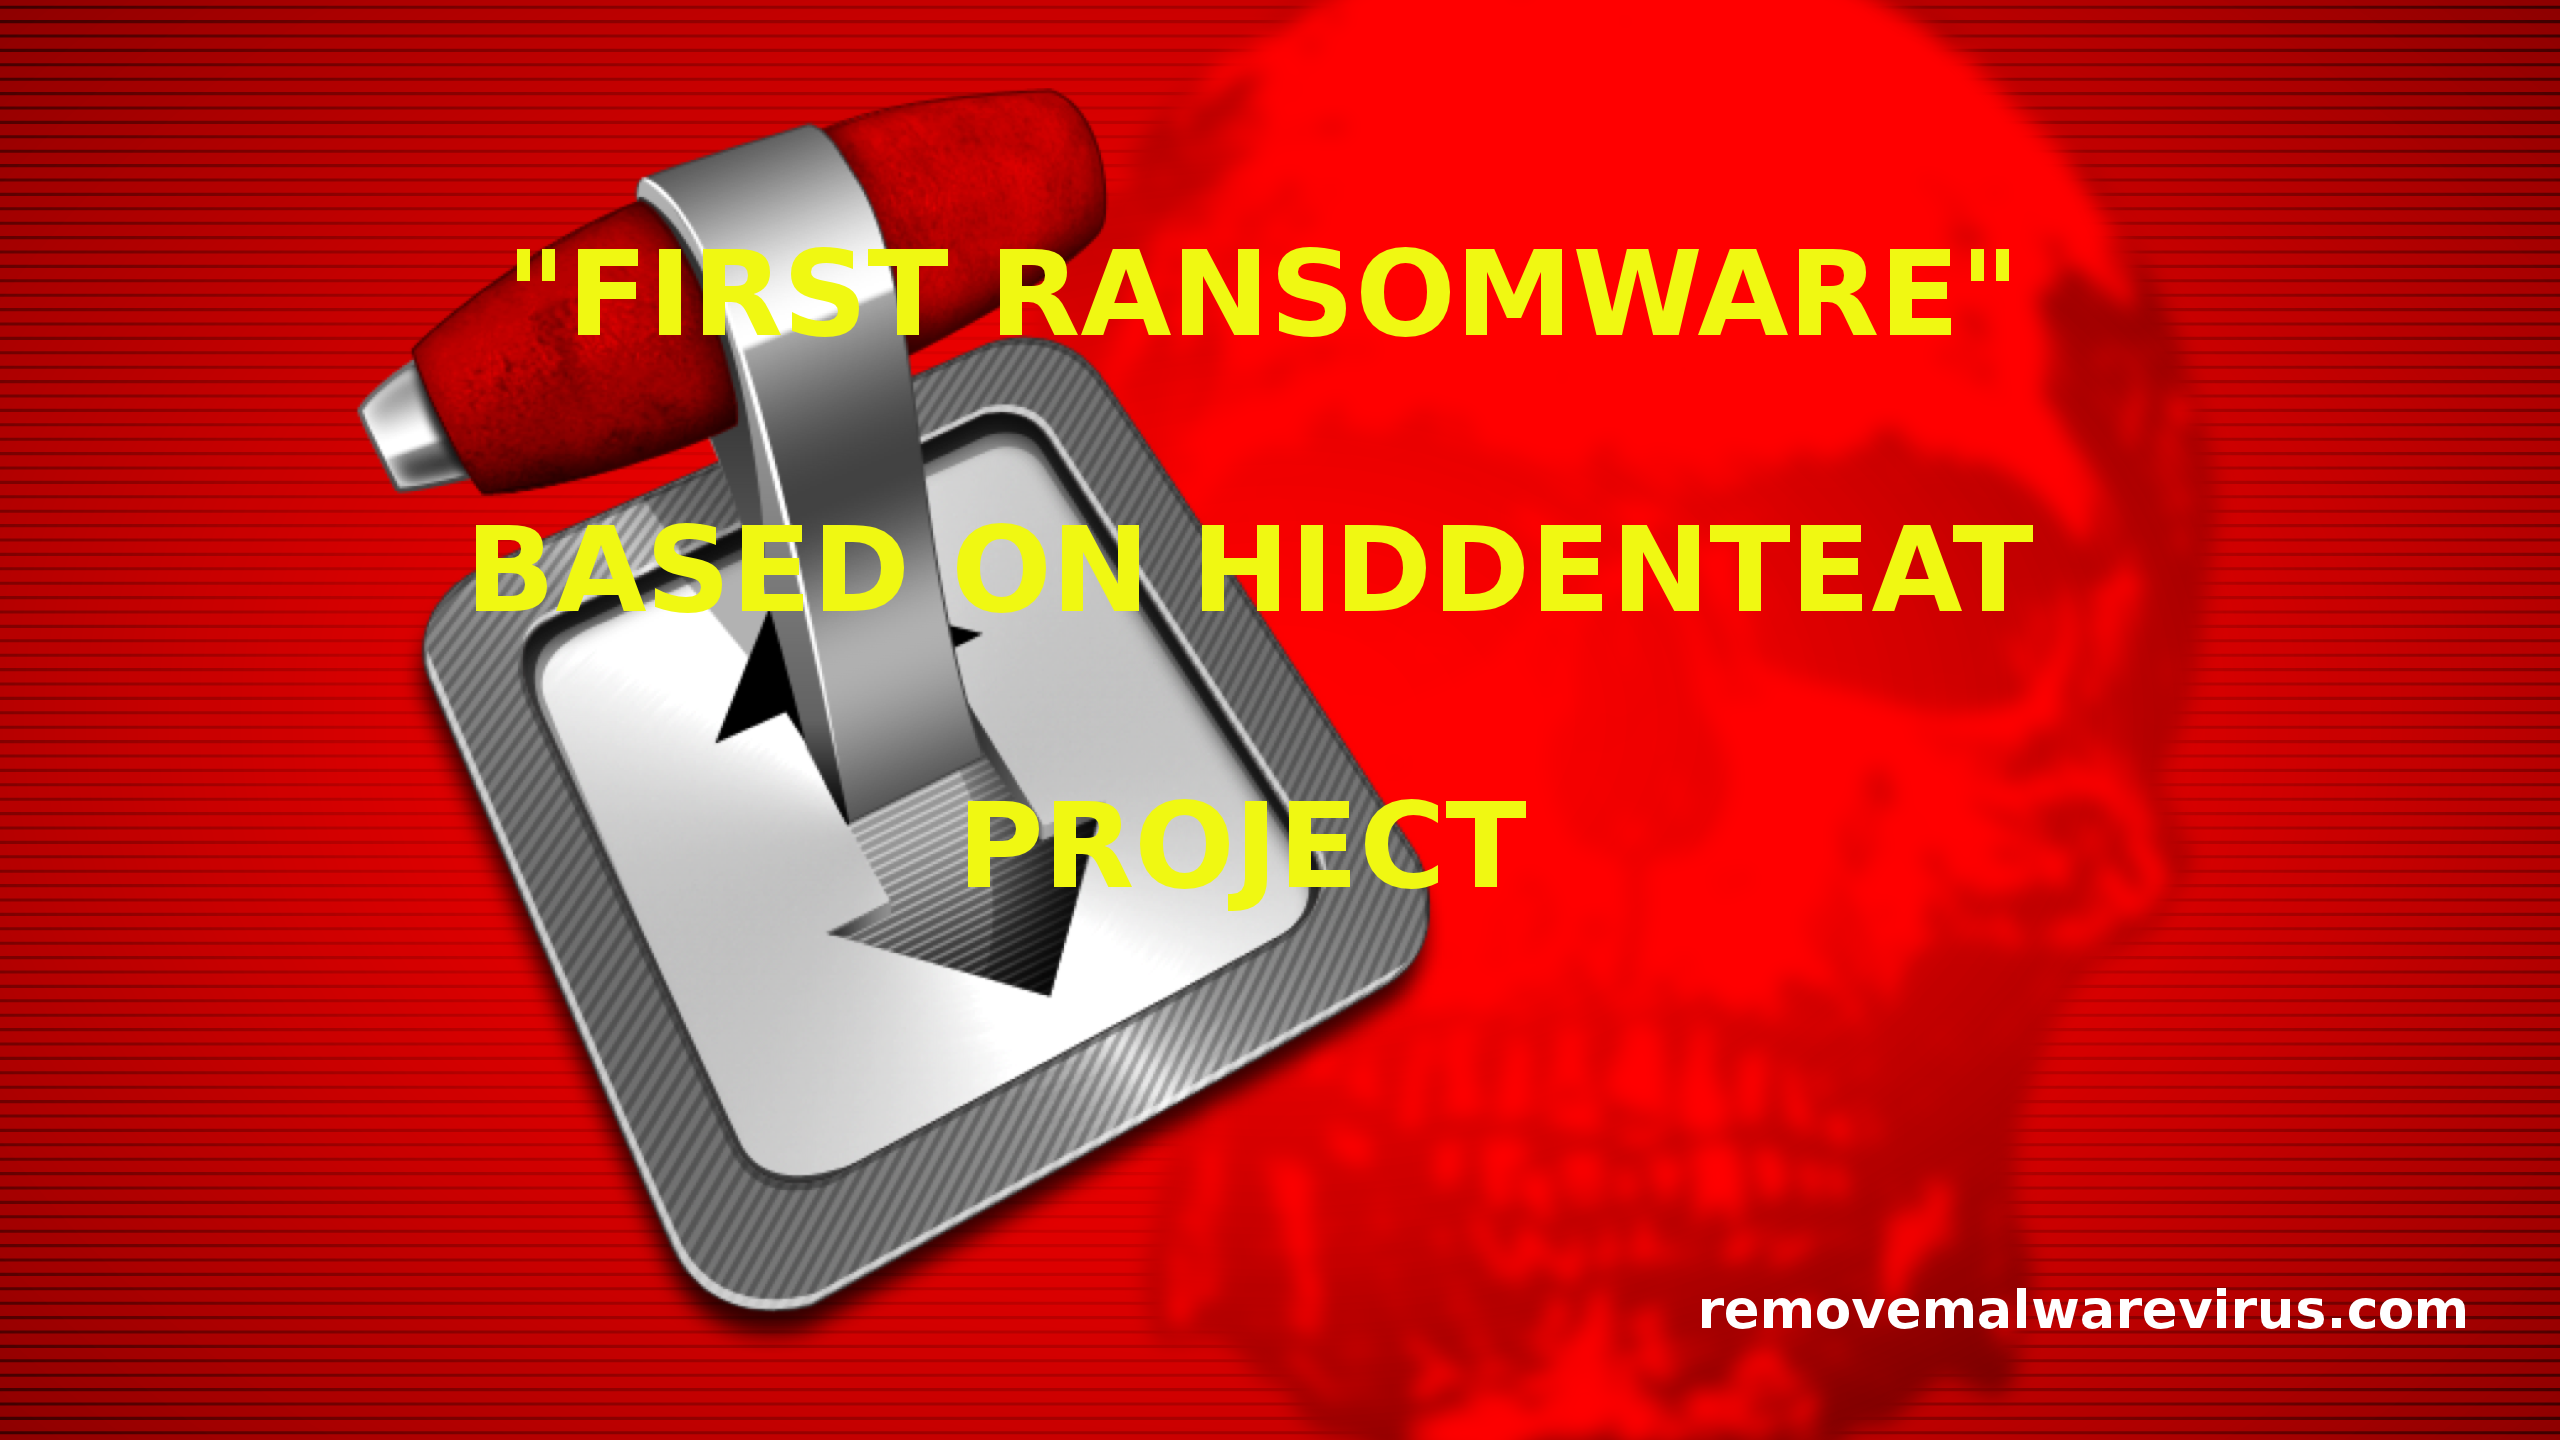 La primera retirada ransomware y descifrado de archivos